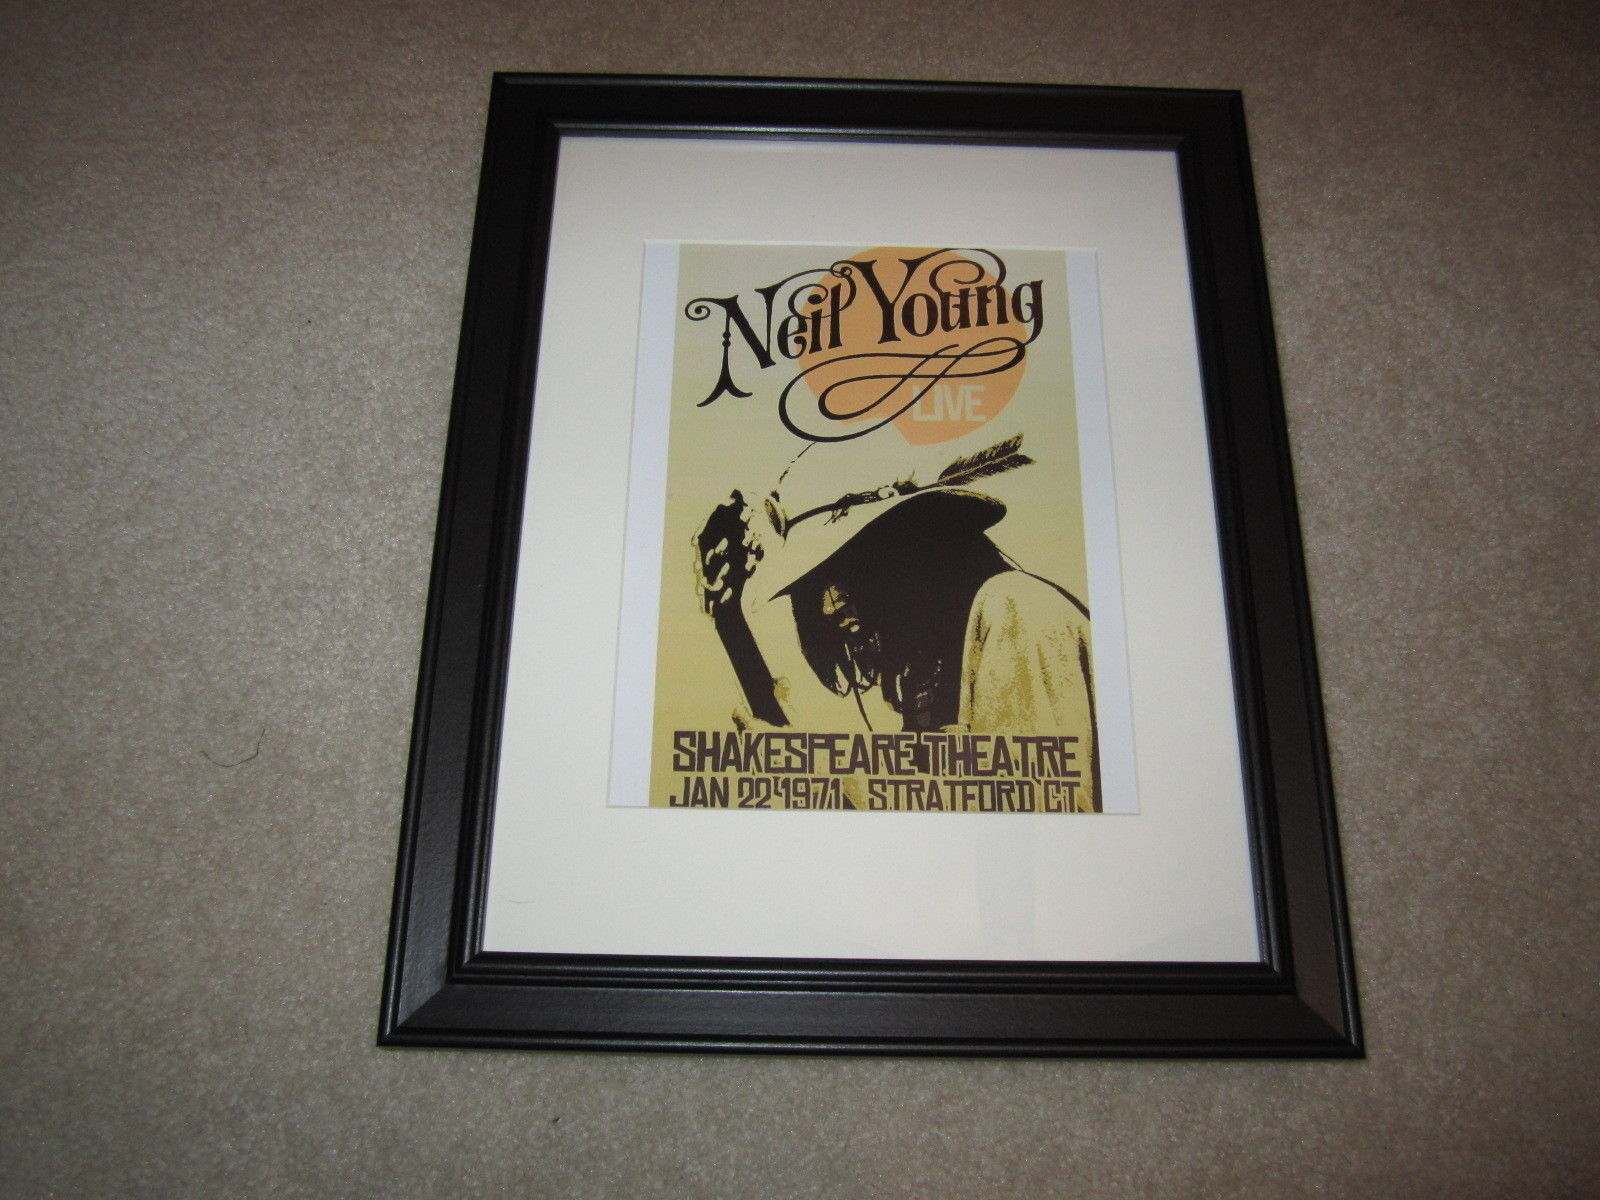 Framed Neil Young Concert Poster,1971, Stratford Ct, Pre Harvest Tour 14\